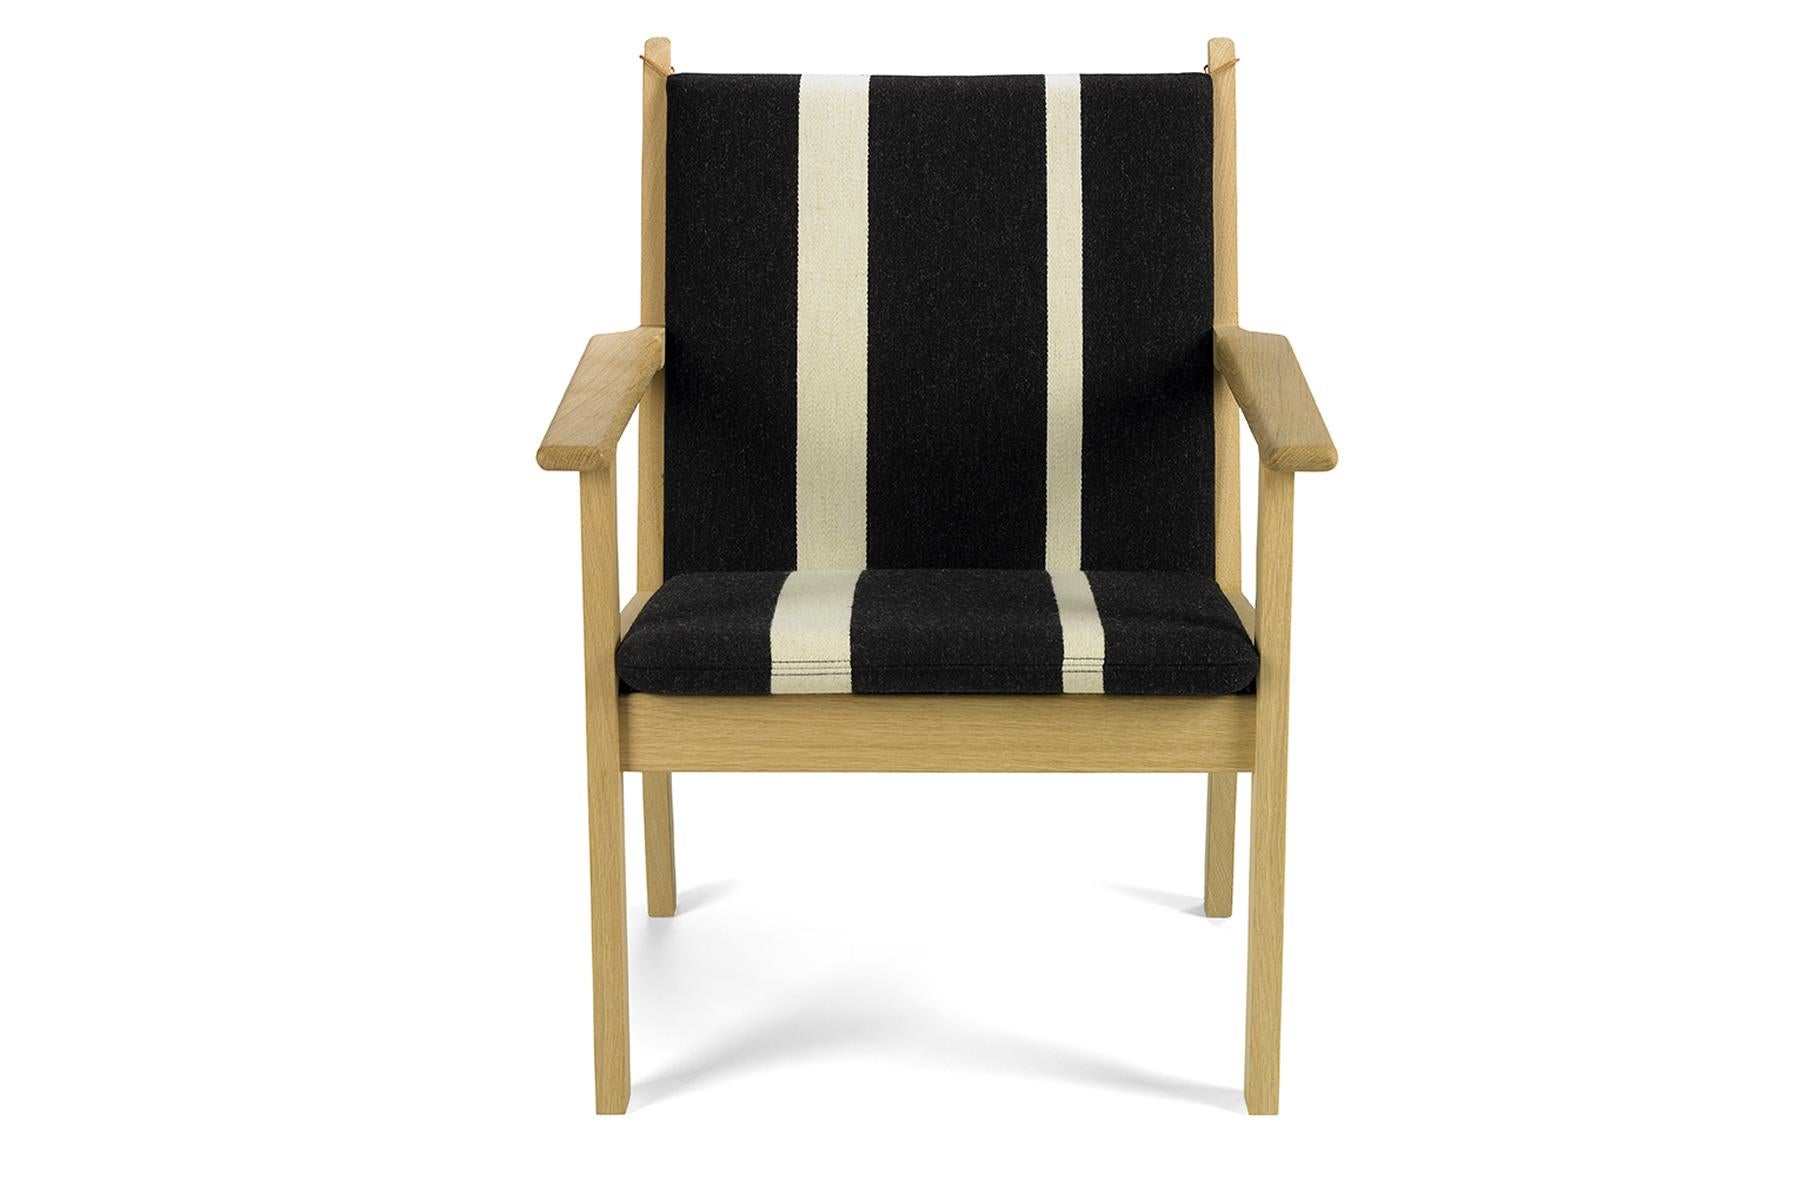 Conçue par Hans Wegner, la chaise longue 284 présente des lignes claires et nettes pour la maison moderne. La chaise est fabriquée à la main dans l'usine de Getama à Gedsted, au Danemark, par des ébénistes qualifiés utilisant des techniques